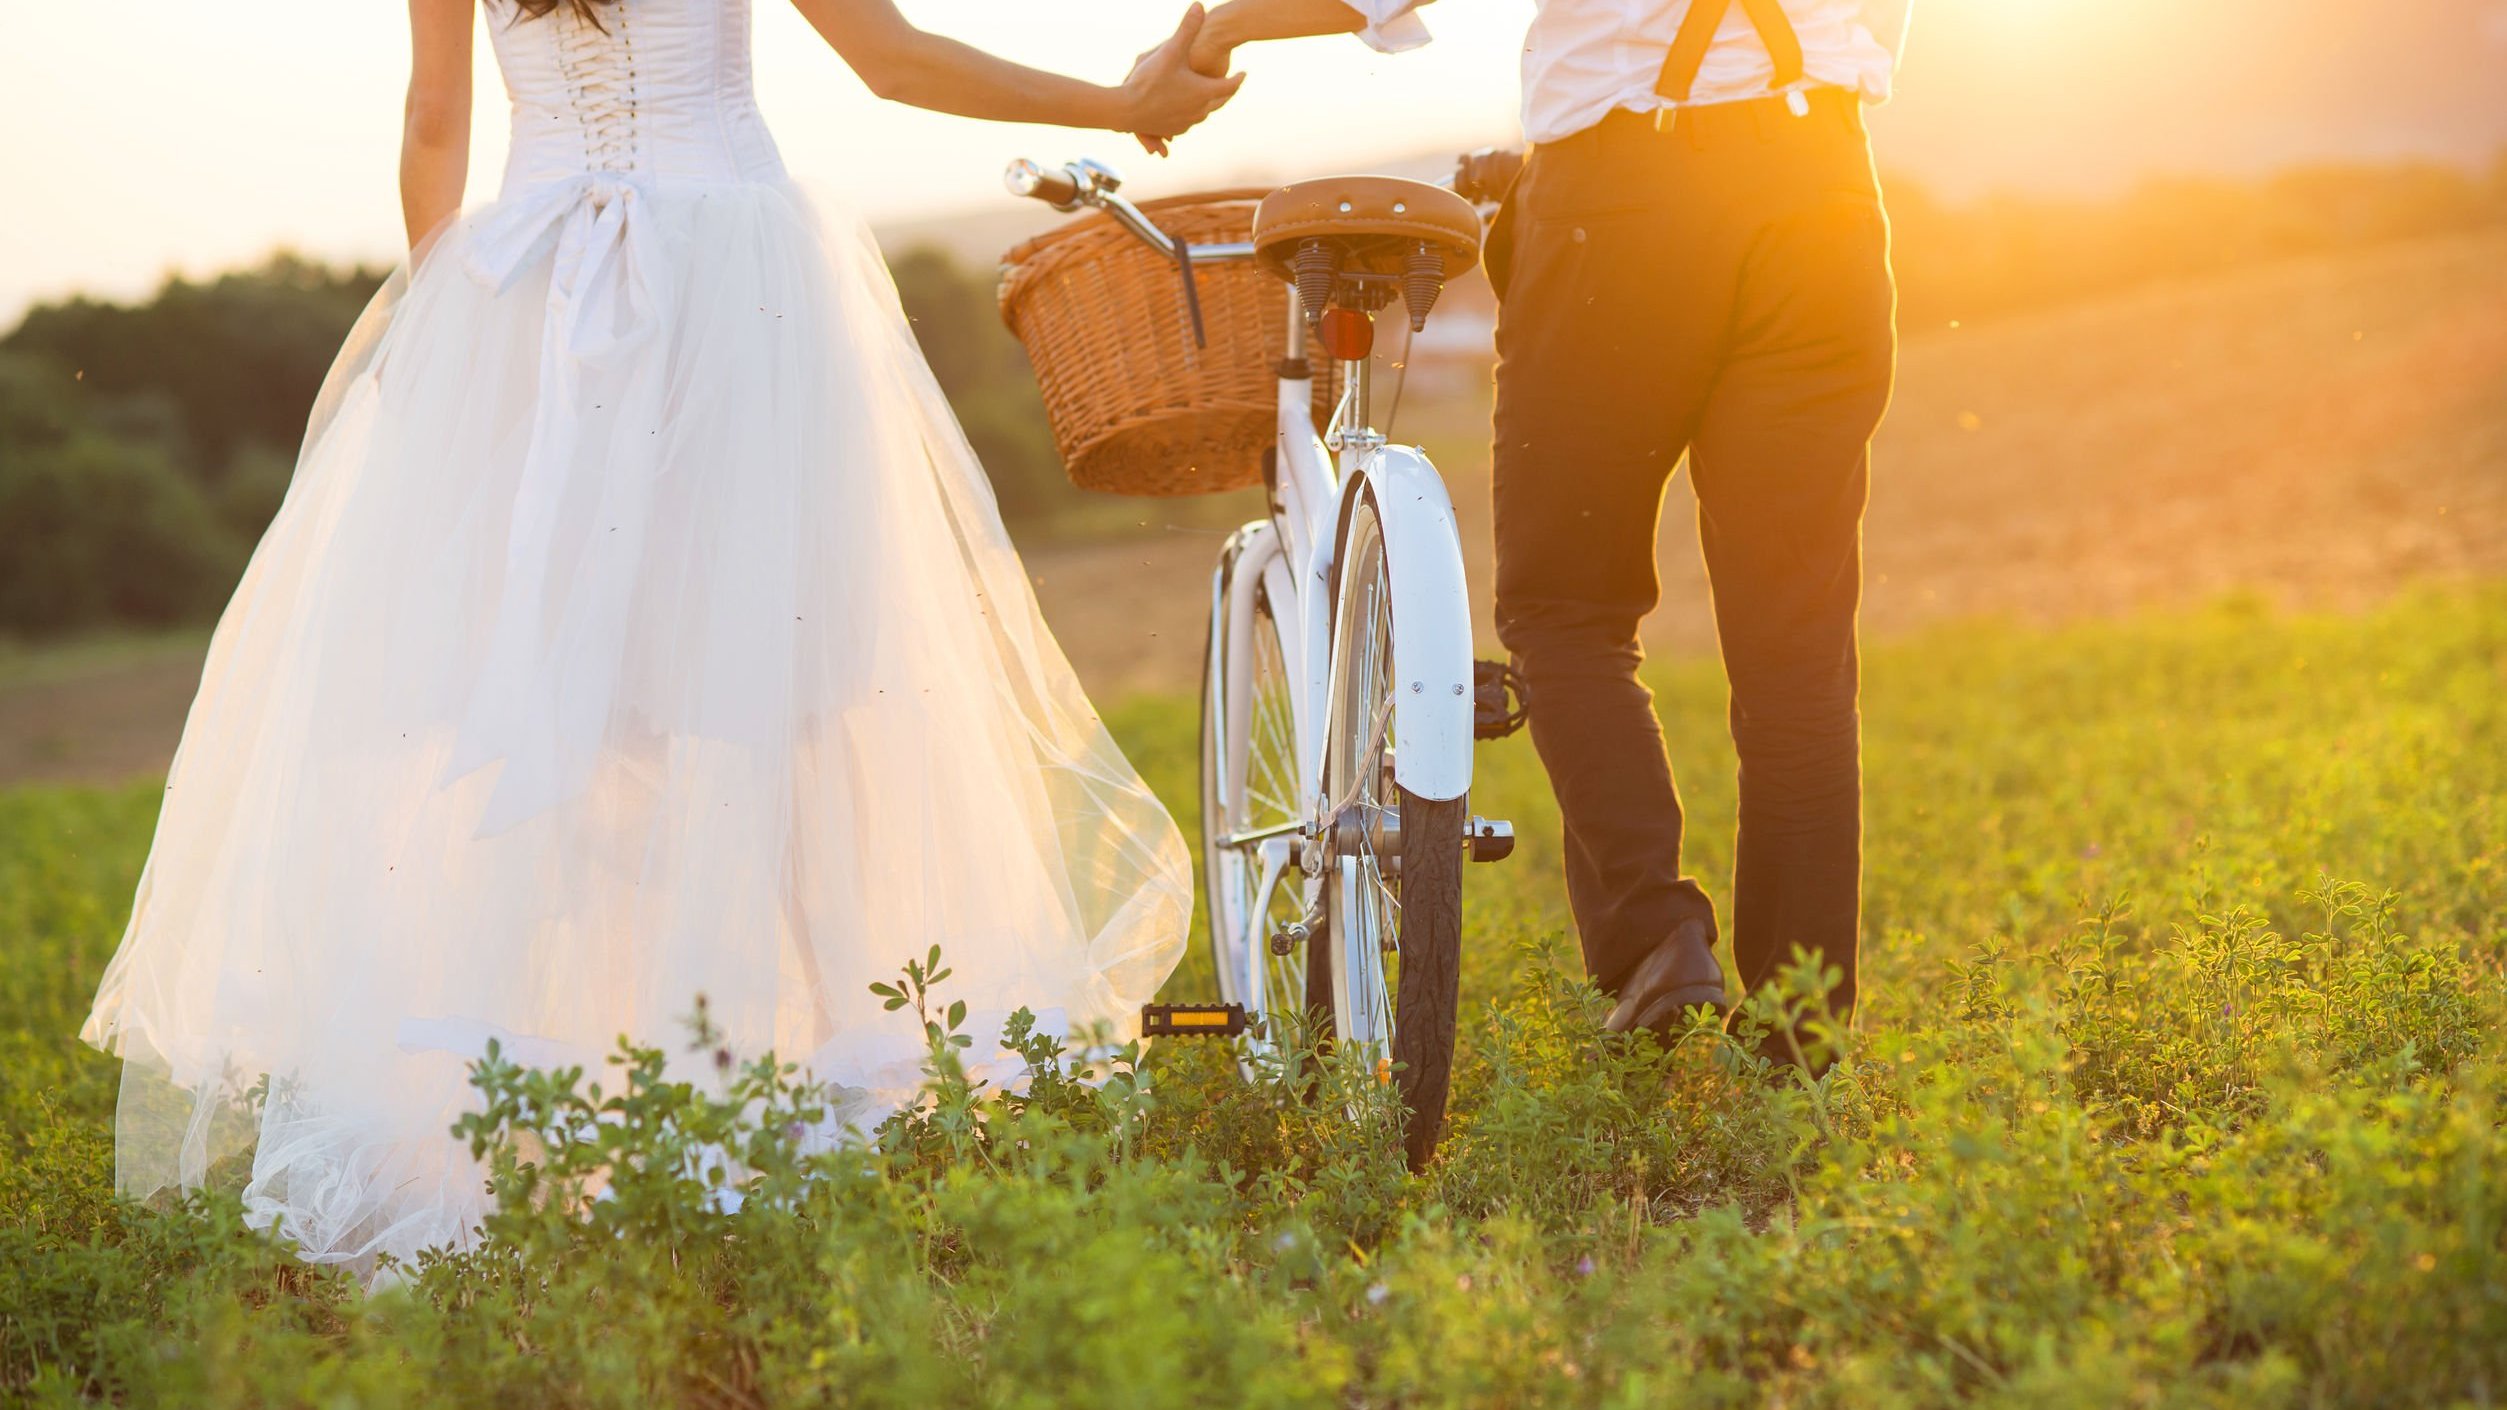 Marido e esposa caminhando em um parque com uma bicicleta.